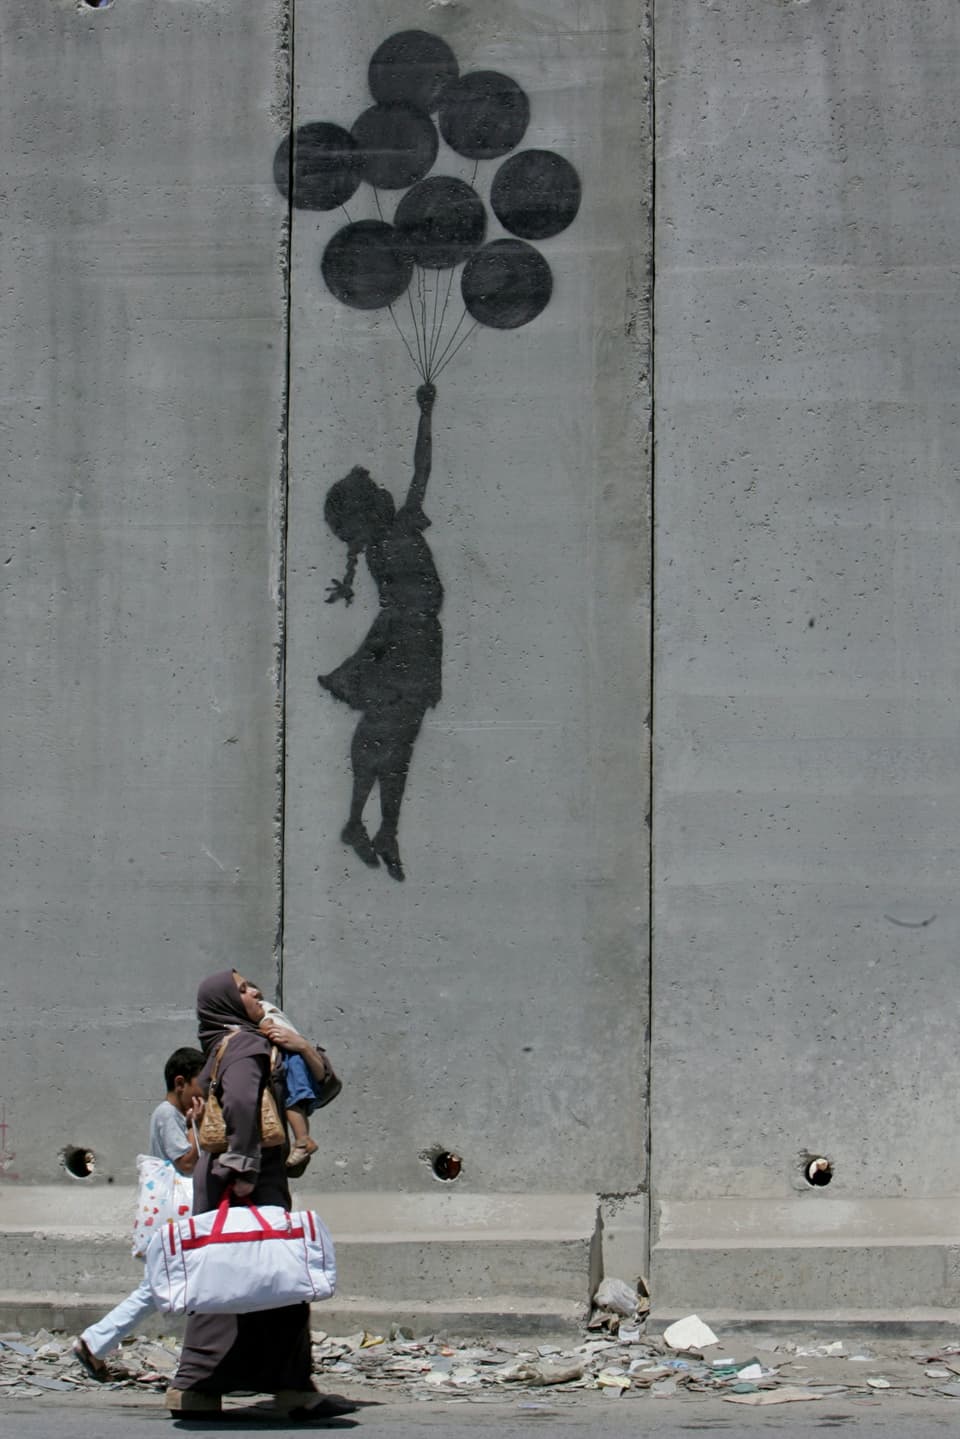 Mädchen fliegt mit 7 Ballons der Sperrmauer zwischen Israel und Palästina empor